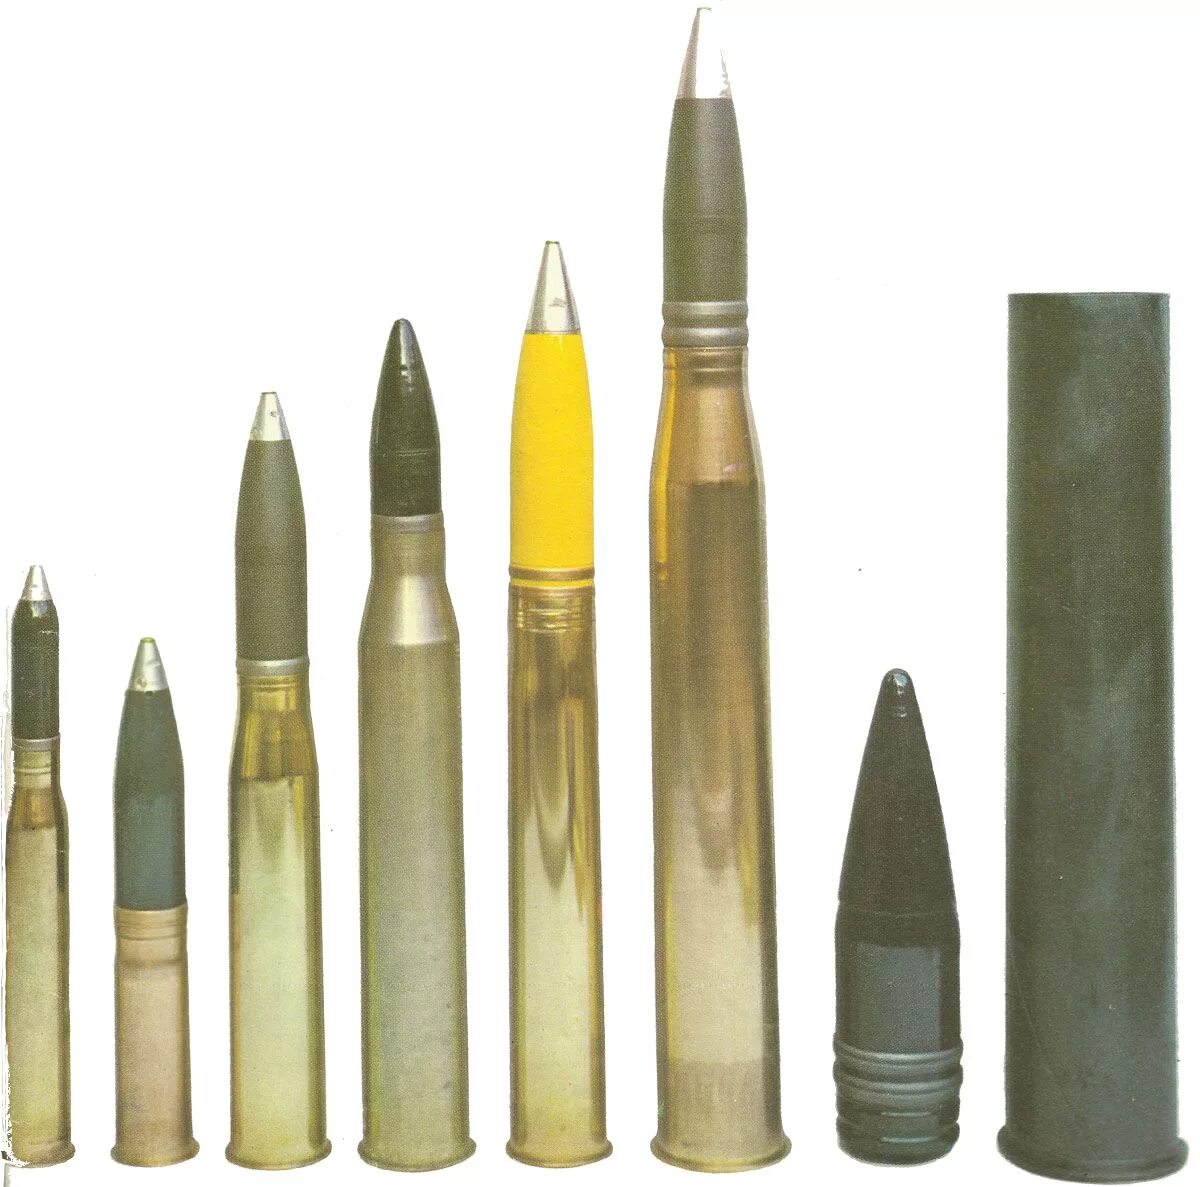 71 2 1 72 3 71. 75 Мм снаряд KWK 40. Снаряд 88 мм Pak 43. 75мм снаряды kwk42. KWK 40 снаряды.